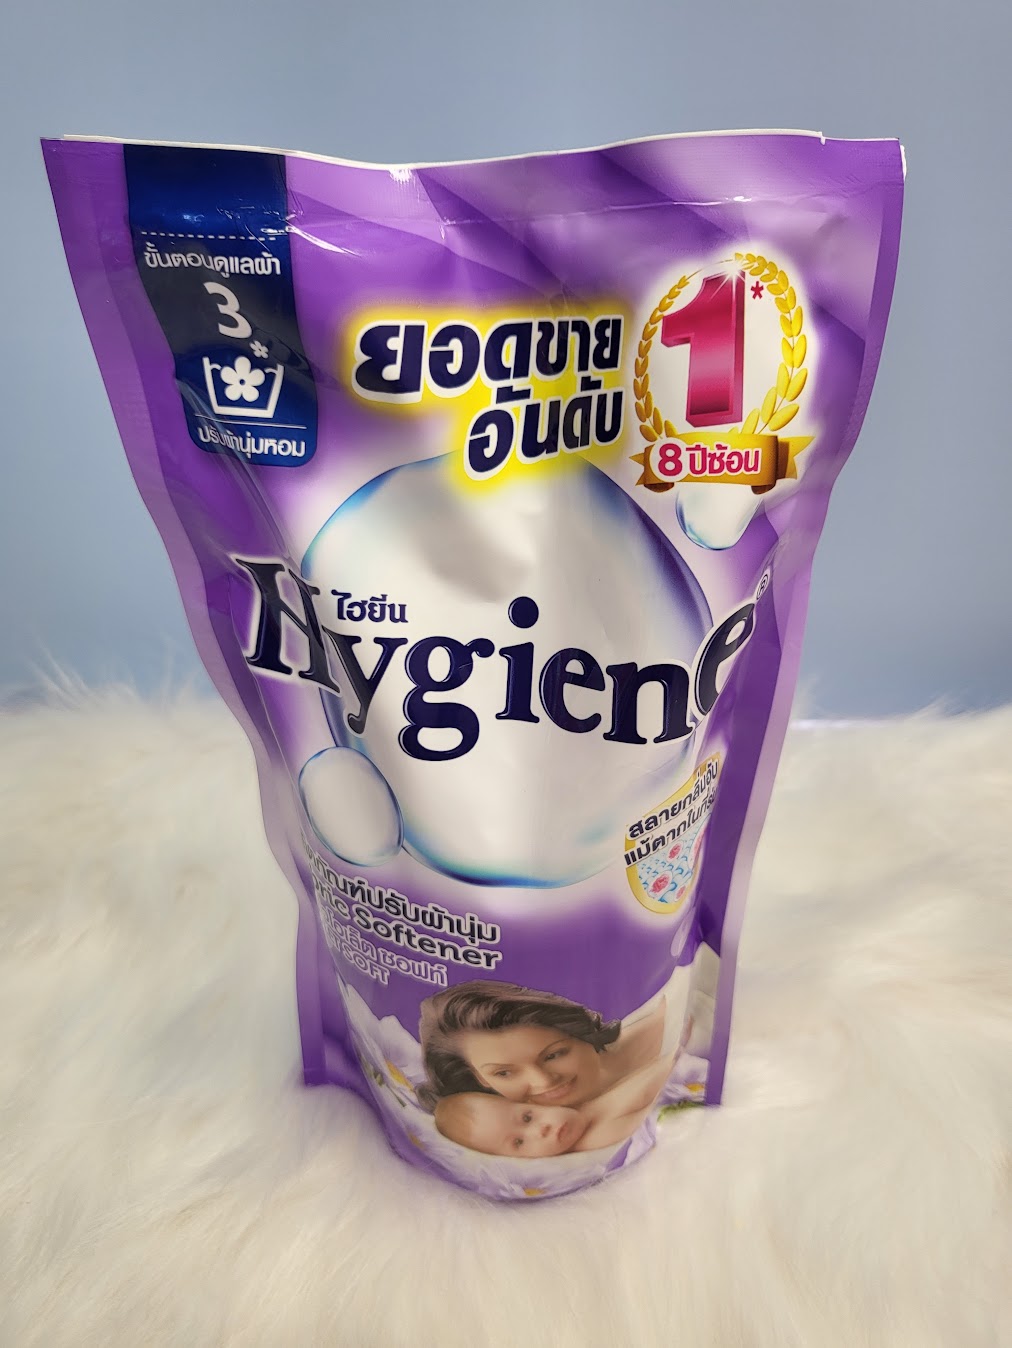 Nước xả vải Hygiene 550ml nội địa Thái - 1 túi